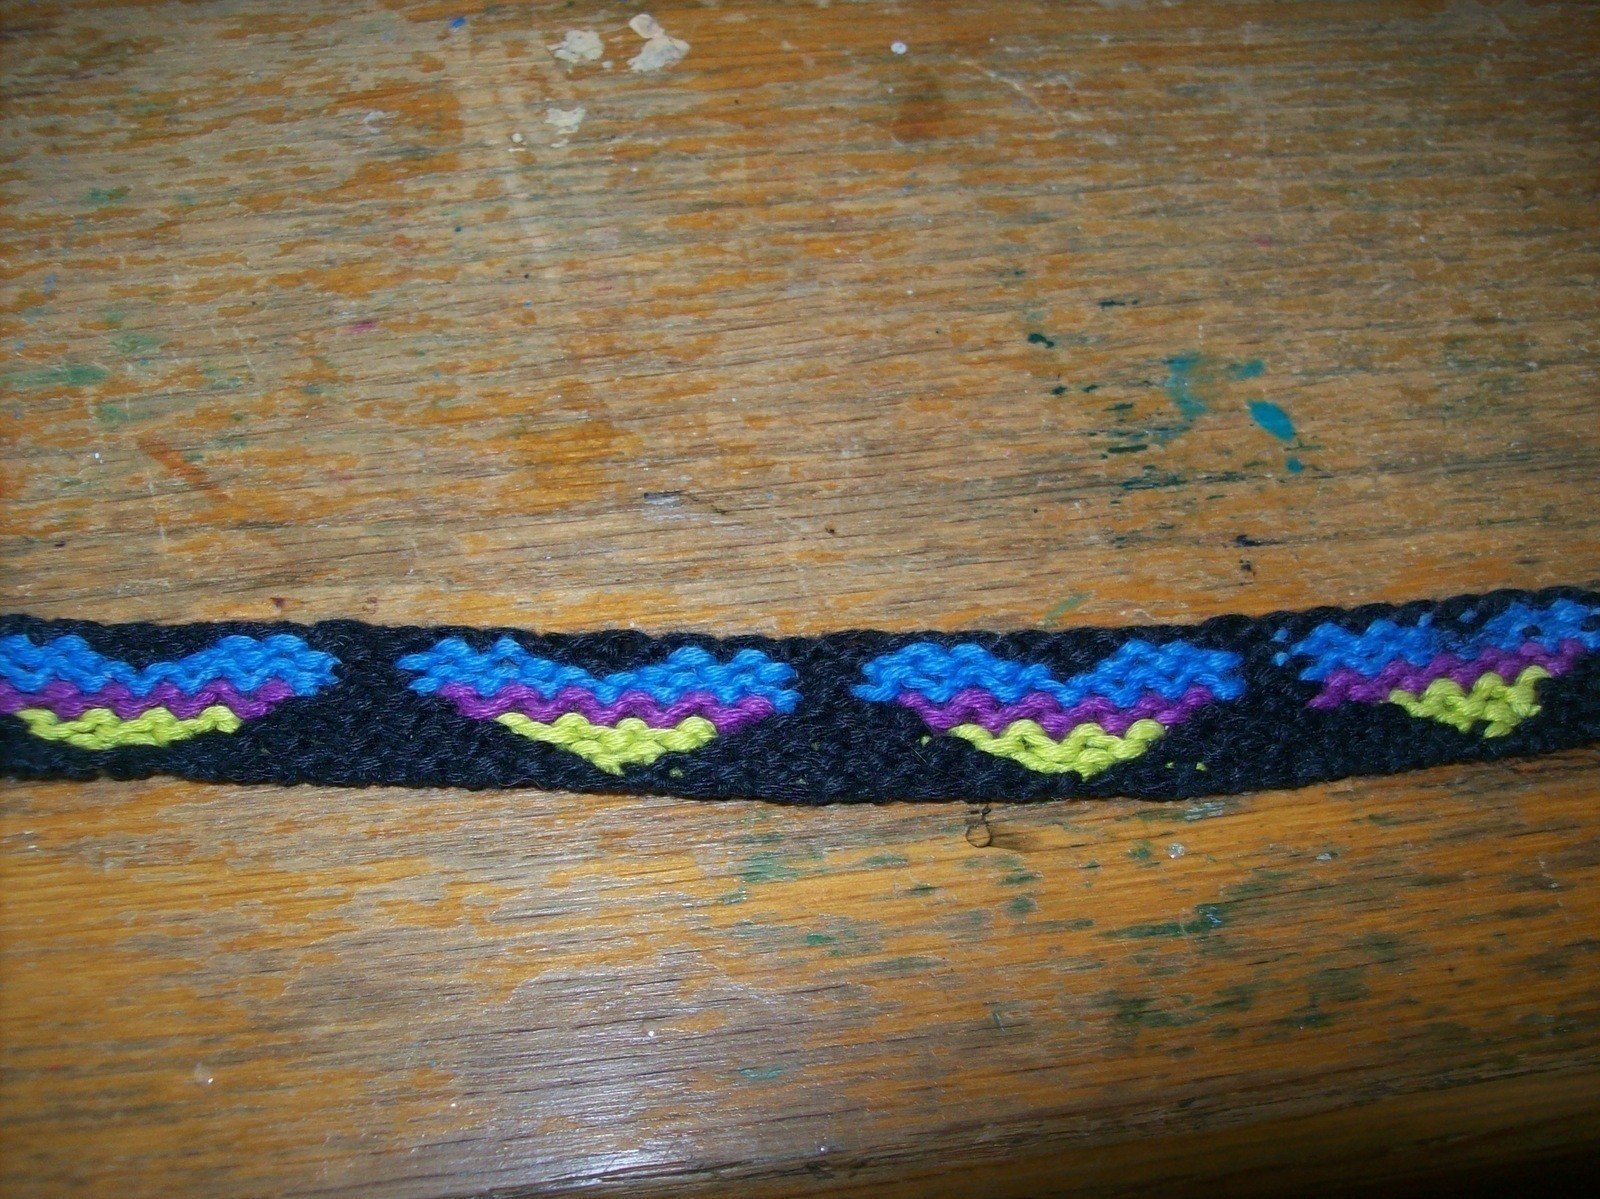 Embroidery Floss Friendship Bracelet Patterns Embroidery Floss Friendship Bracelets A Friendship Bracelet